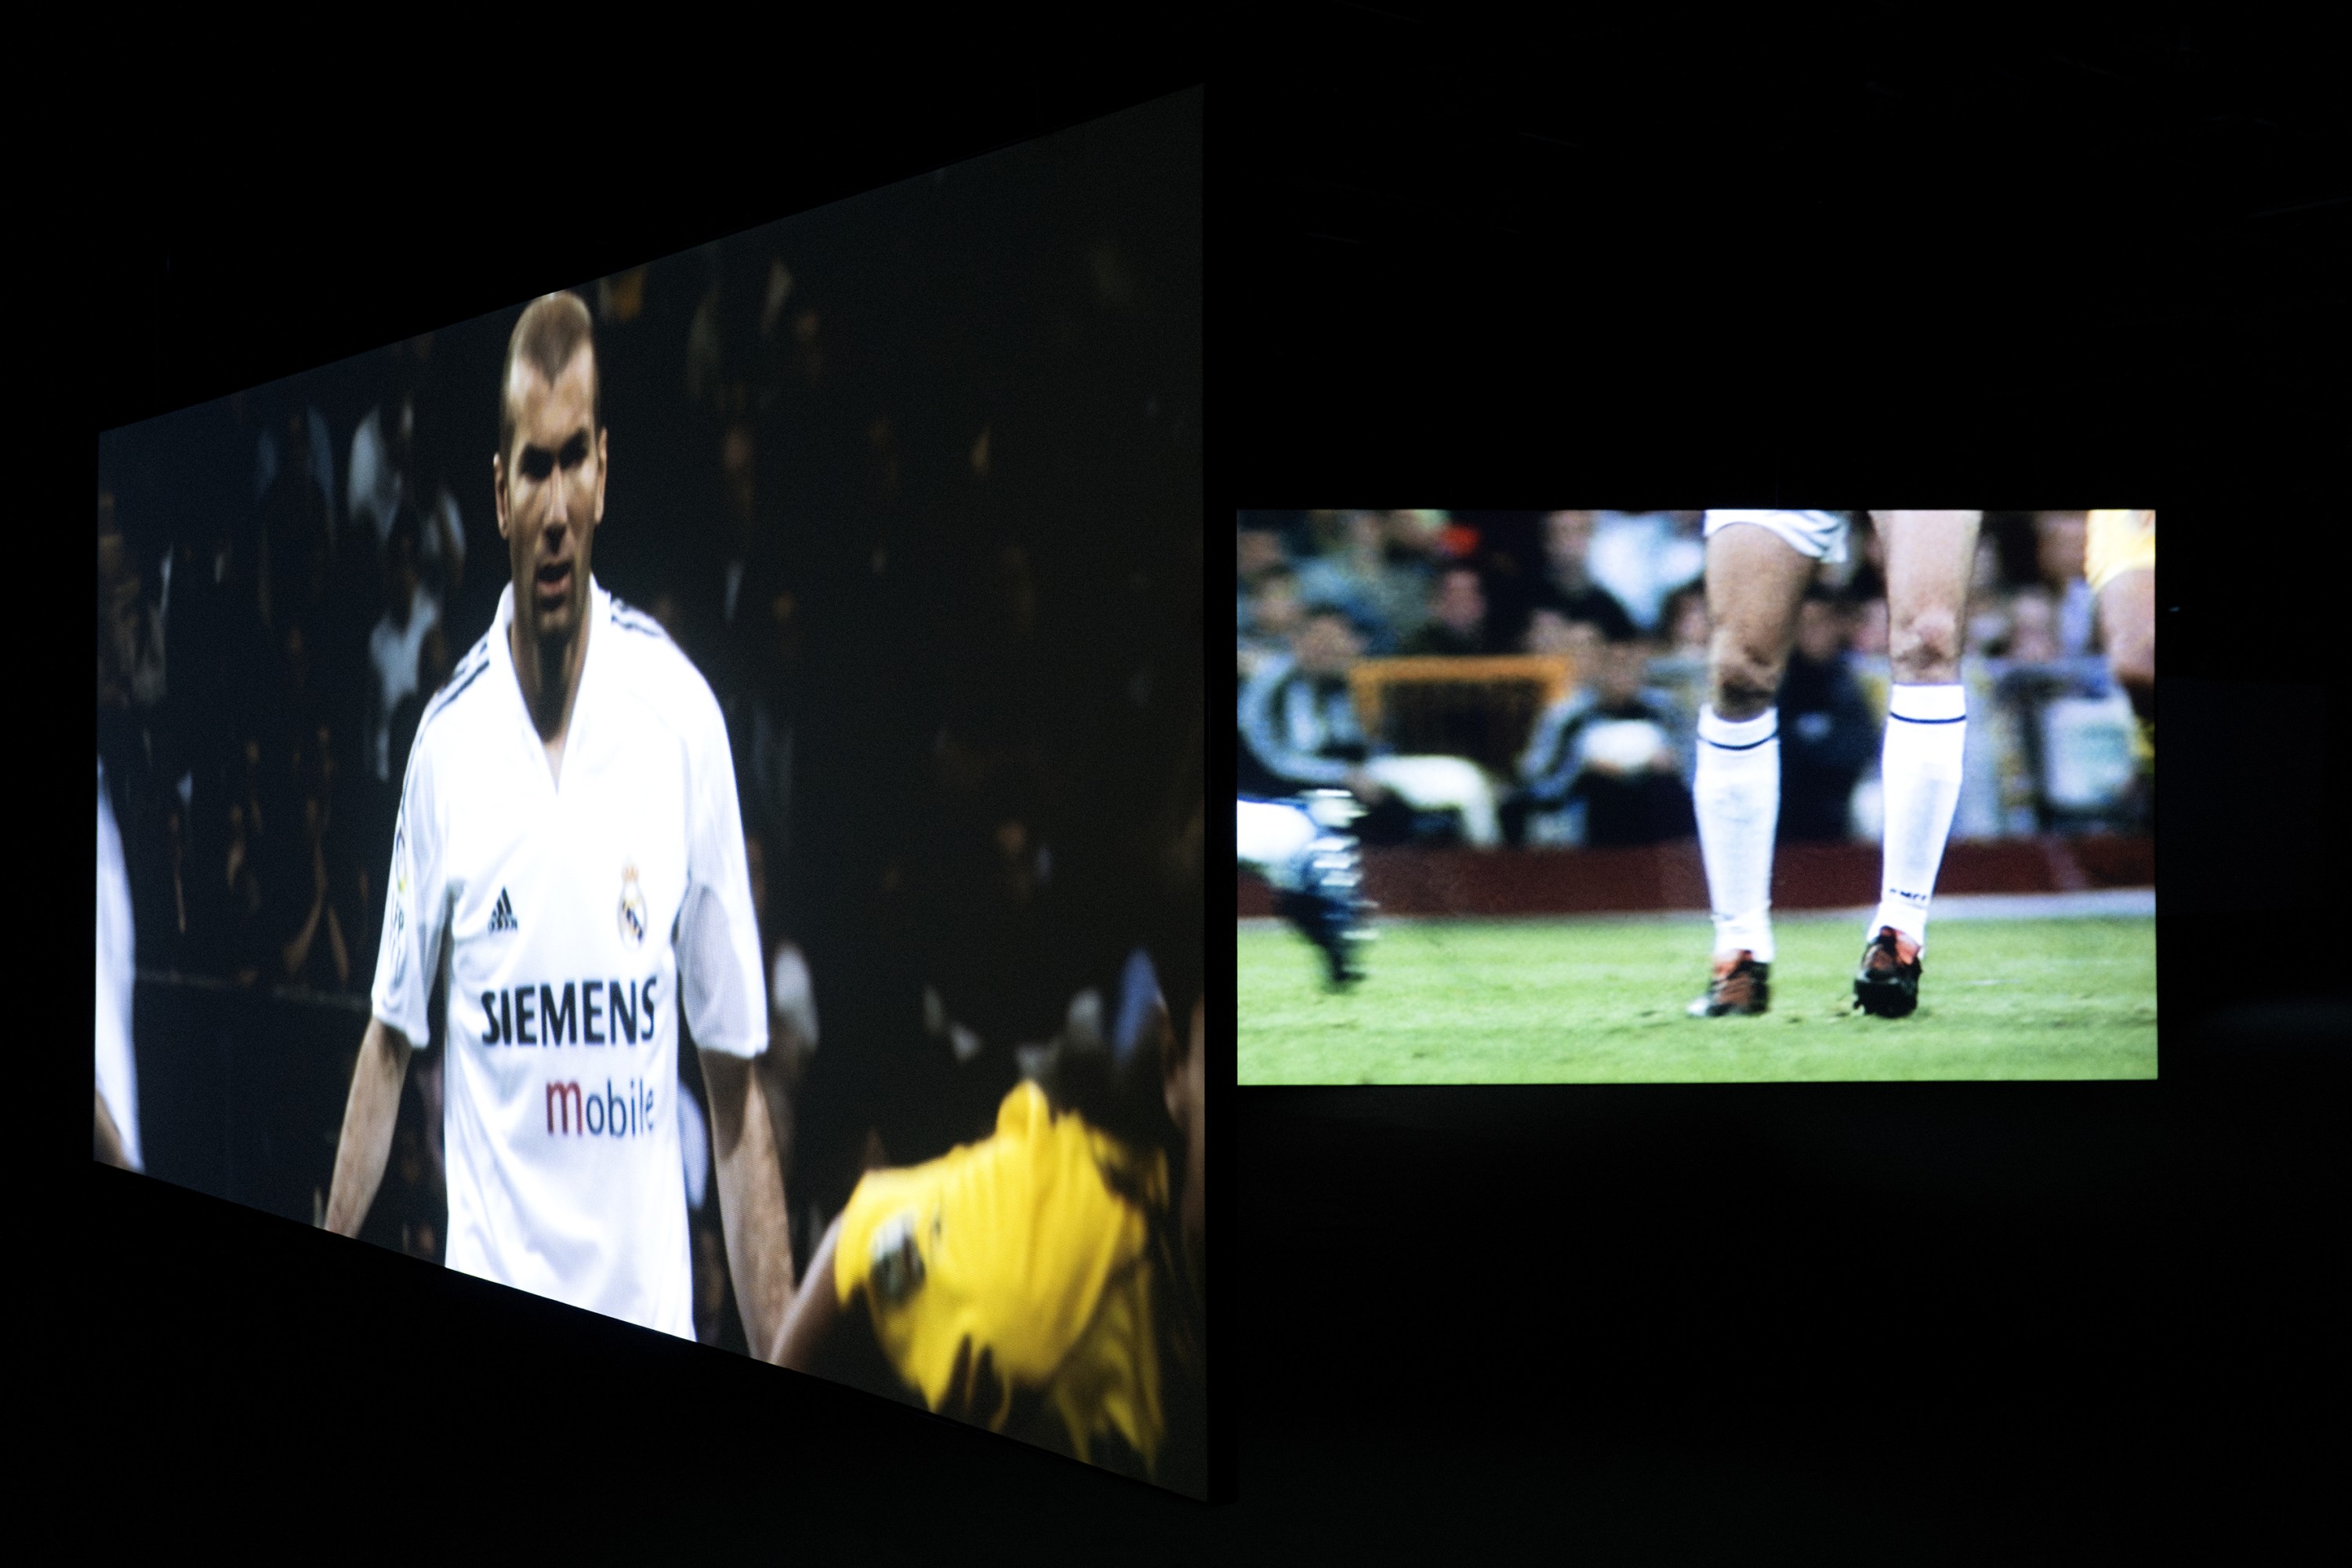 Zidane: A 21st Century Portrait Douglas Gordon & Philippe Parreno